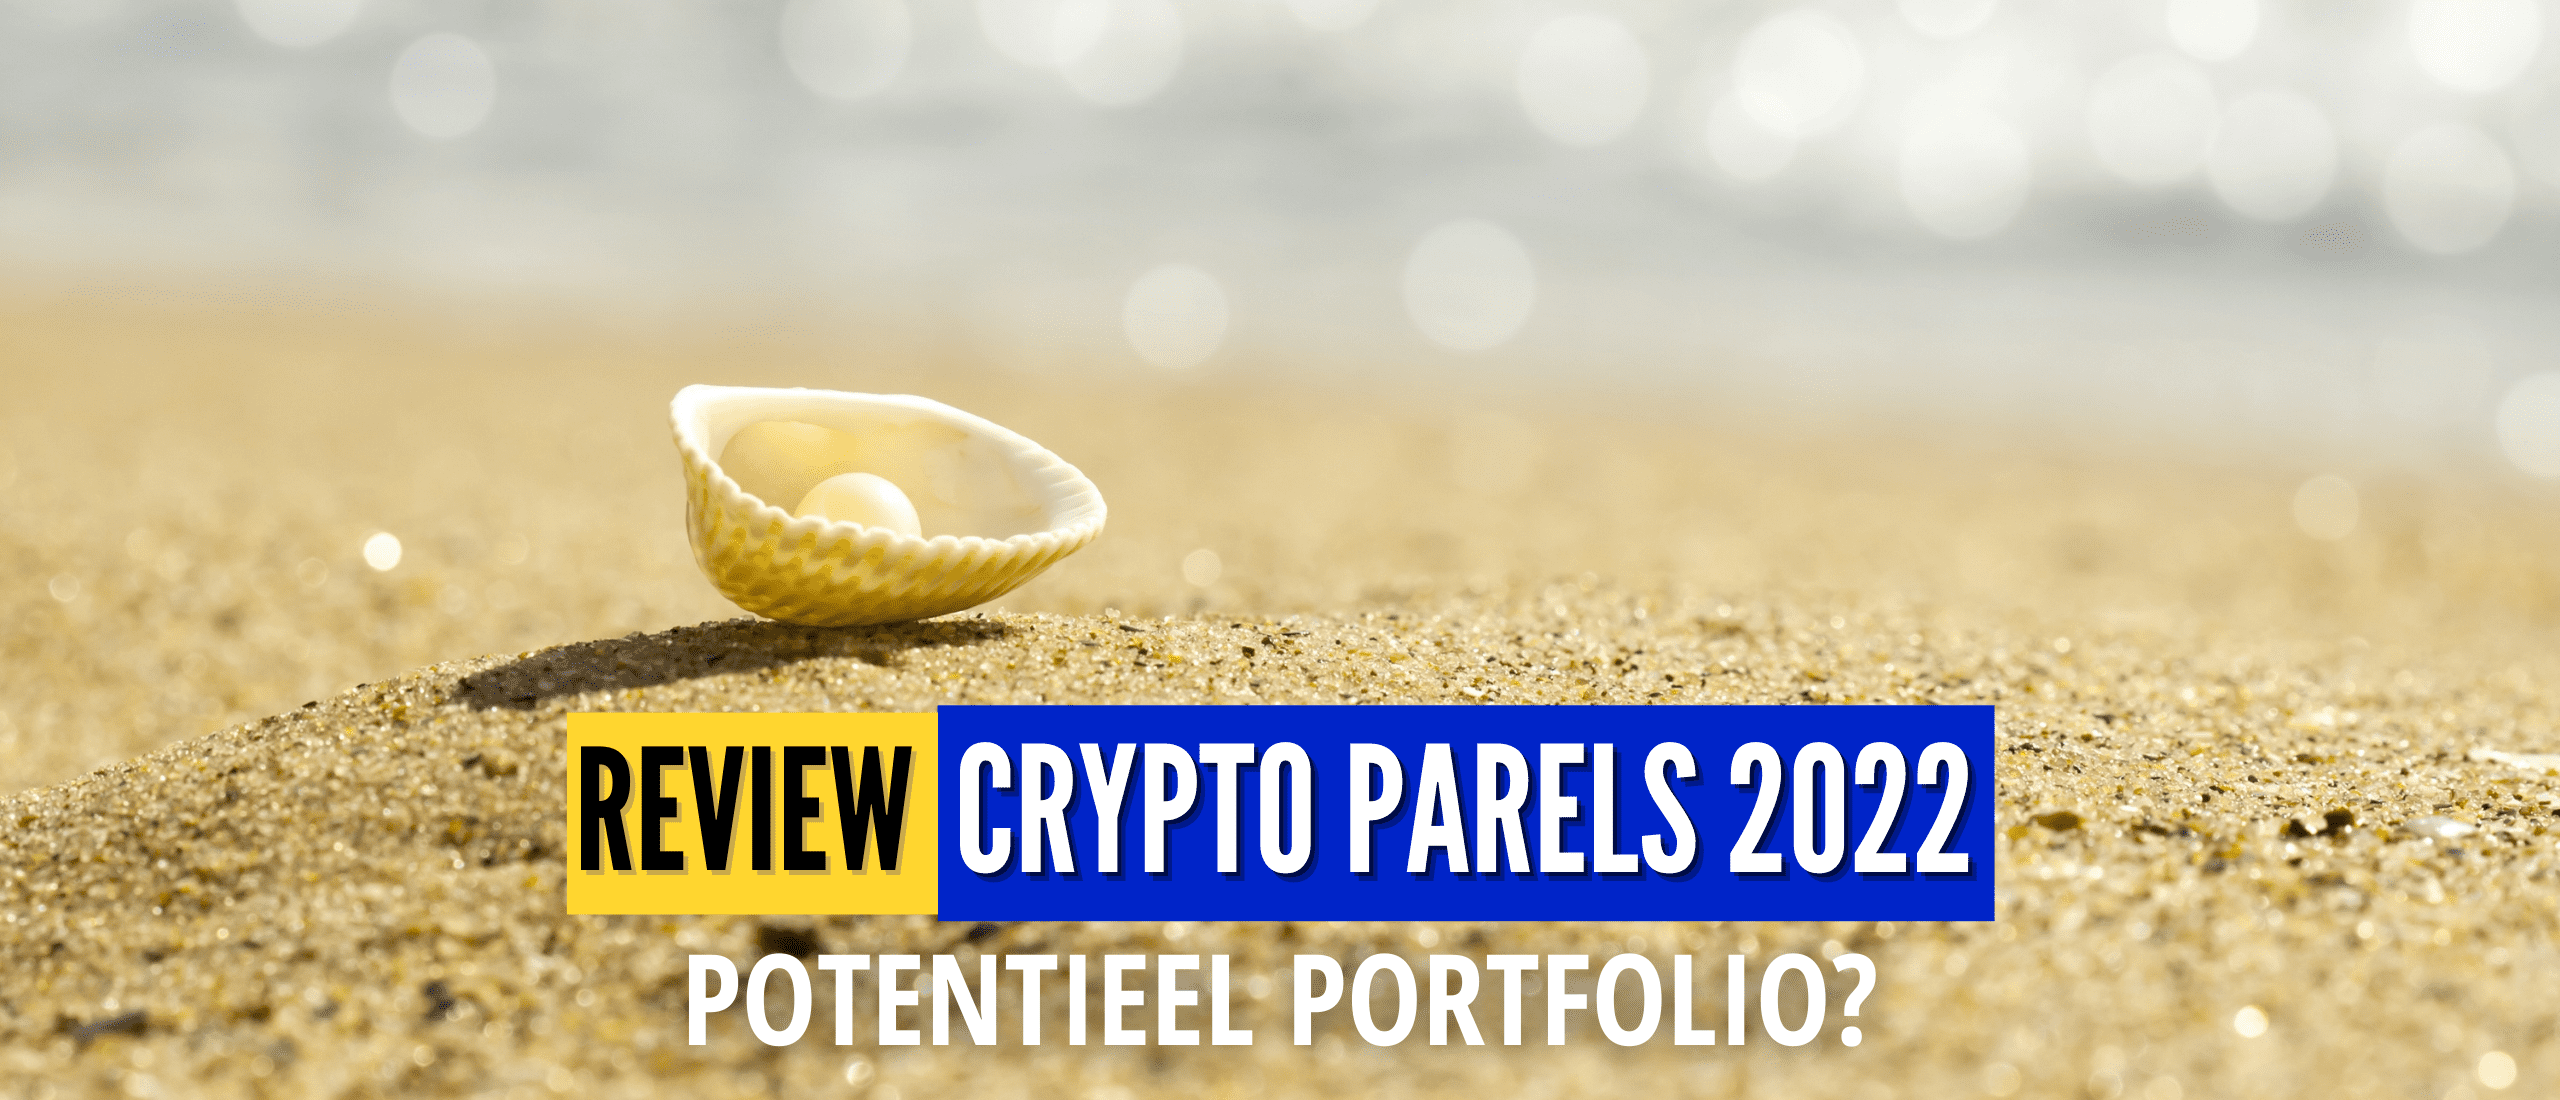 crypto-portfolio-2022-review